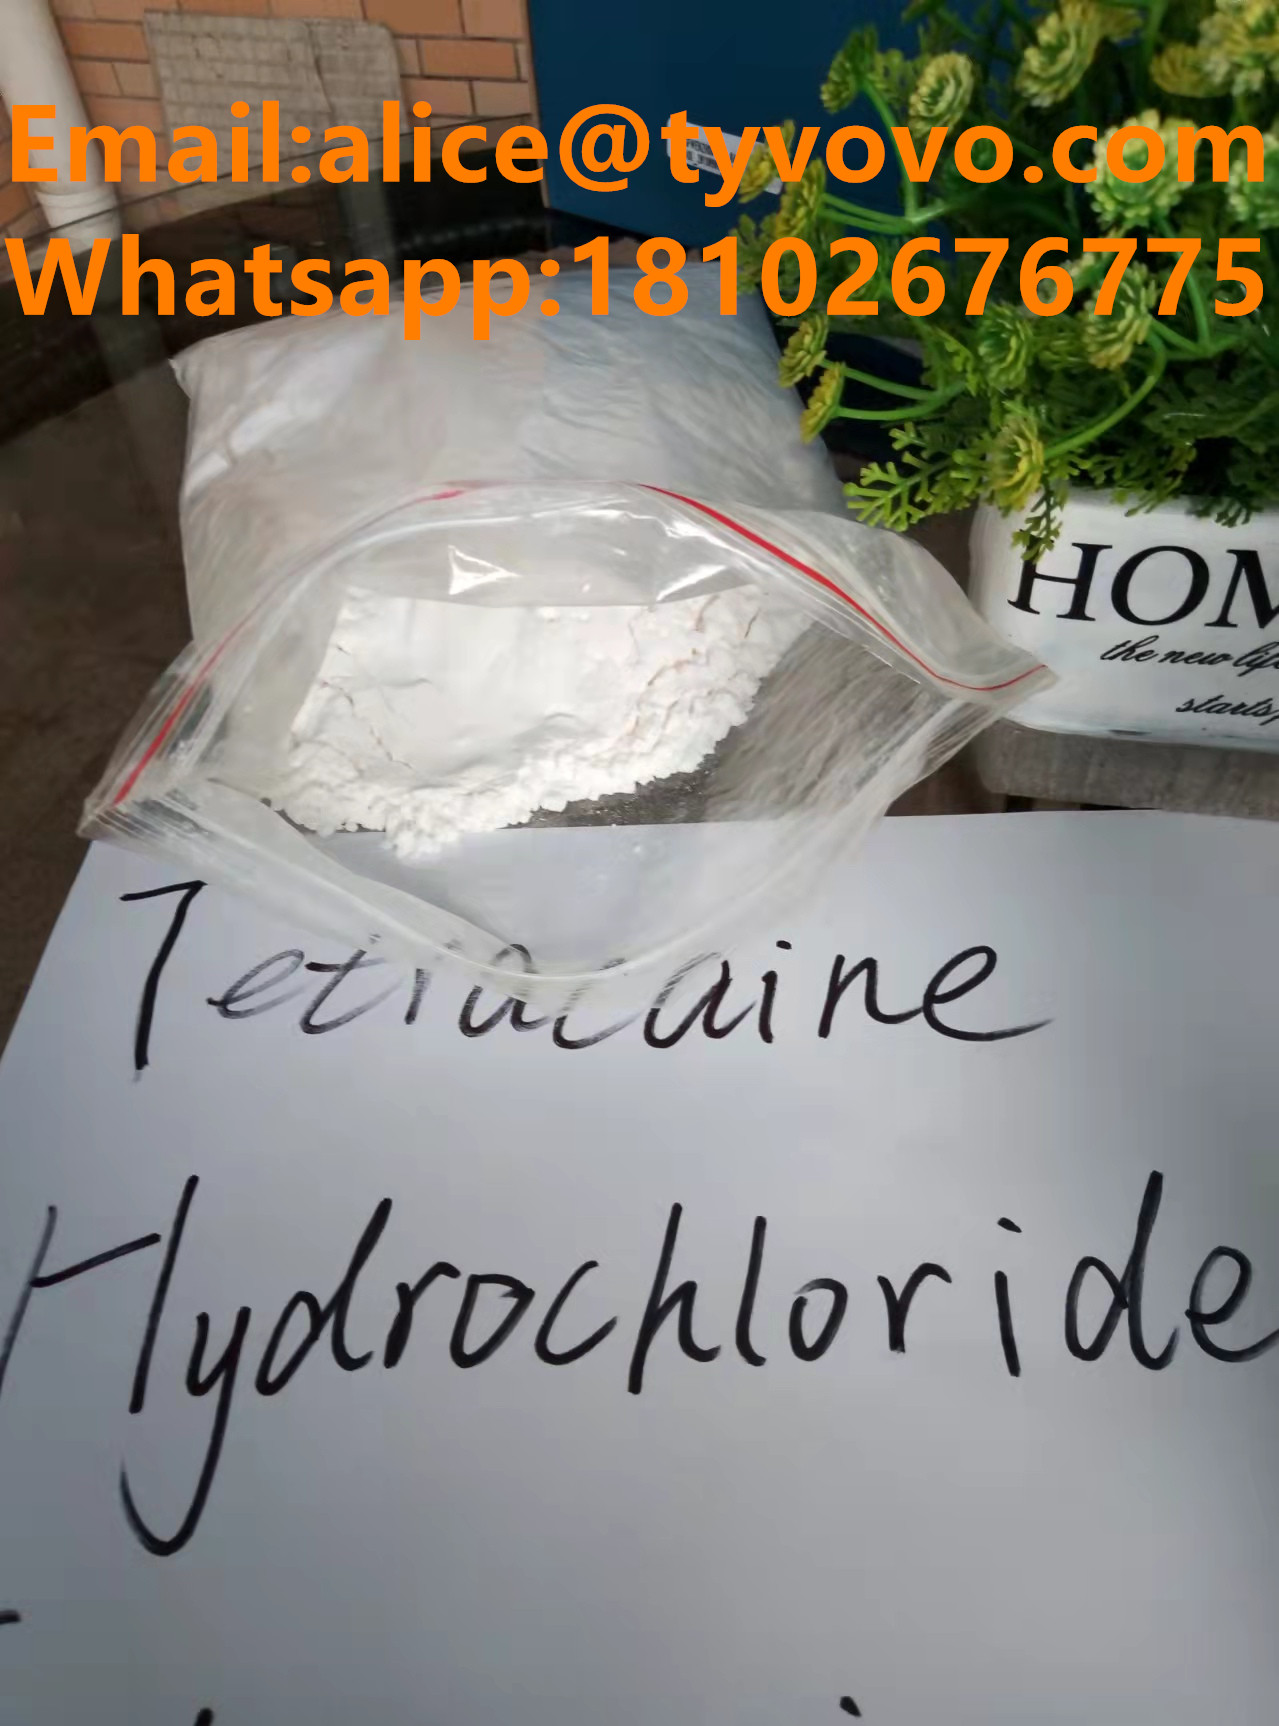 99% pure Tetracaine hydrochloride/Tetracaina hcl/tetracaina hydrochloride hloride powder with USP/BP standard  